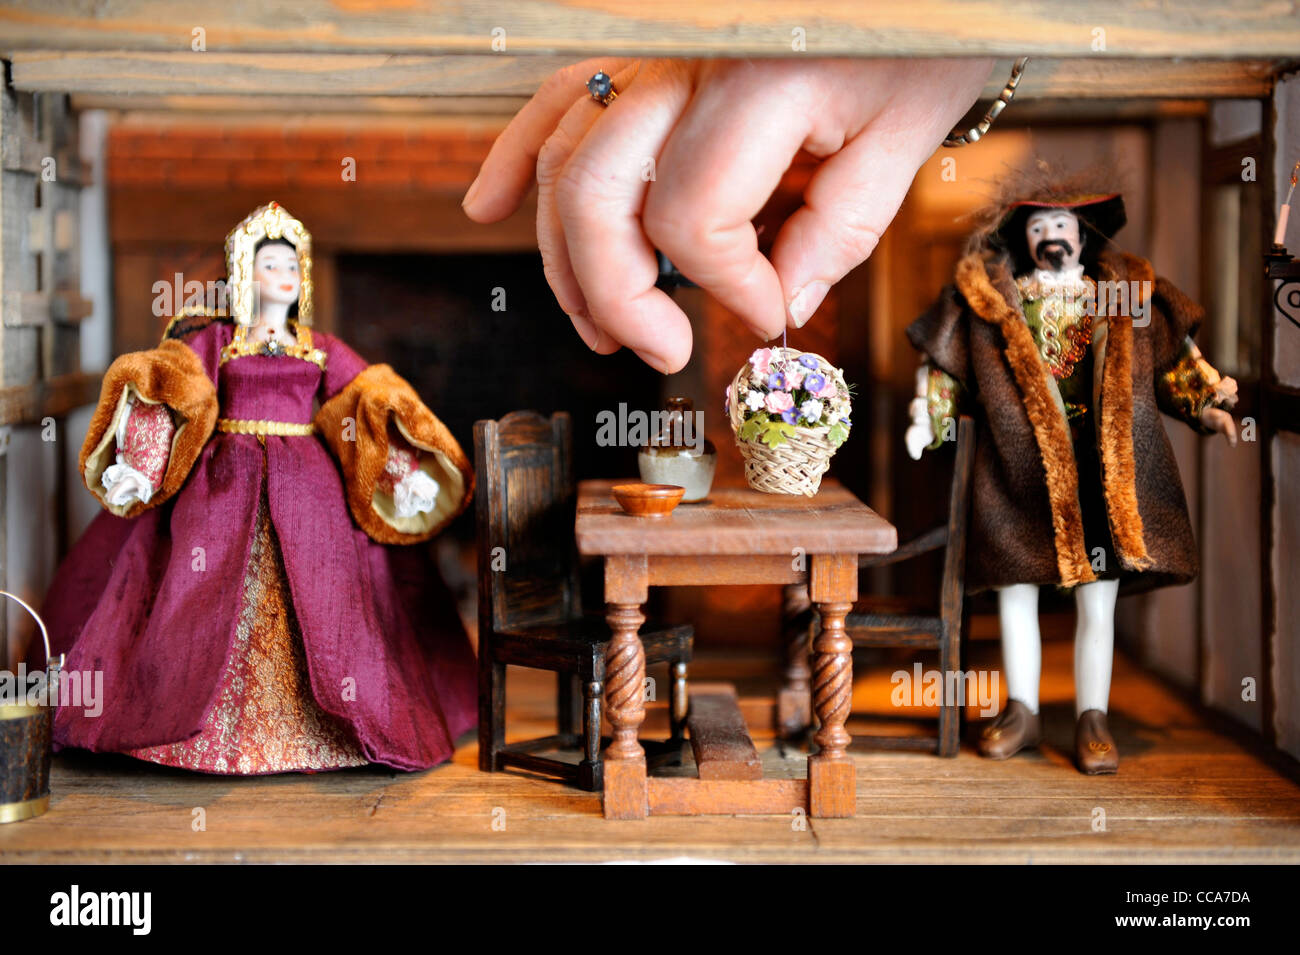 Kit Meggitt arrangiert, dass Elemente in ihrem Tudor Aristokraten Solar Zimmer "Miniatur" - das Puppenhaus und Miniaturen modellin angezeigt Stockfoto